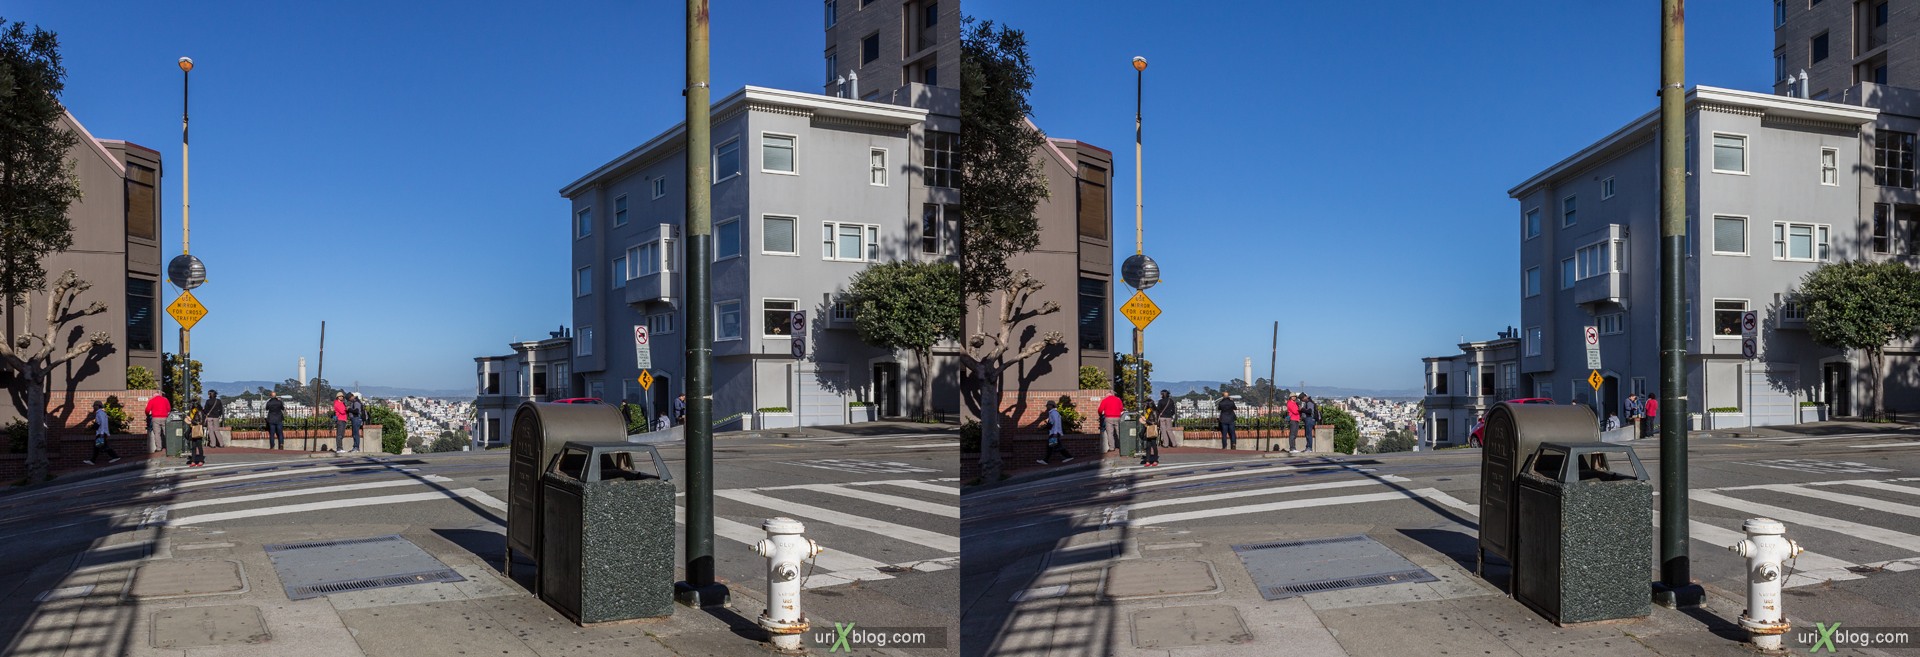 2013, США, Калифорния, Сан Франциско, улица Ломбард, Русский холм, 3D, перекрёстная стереопара, стерео, стереопара